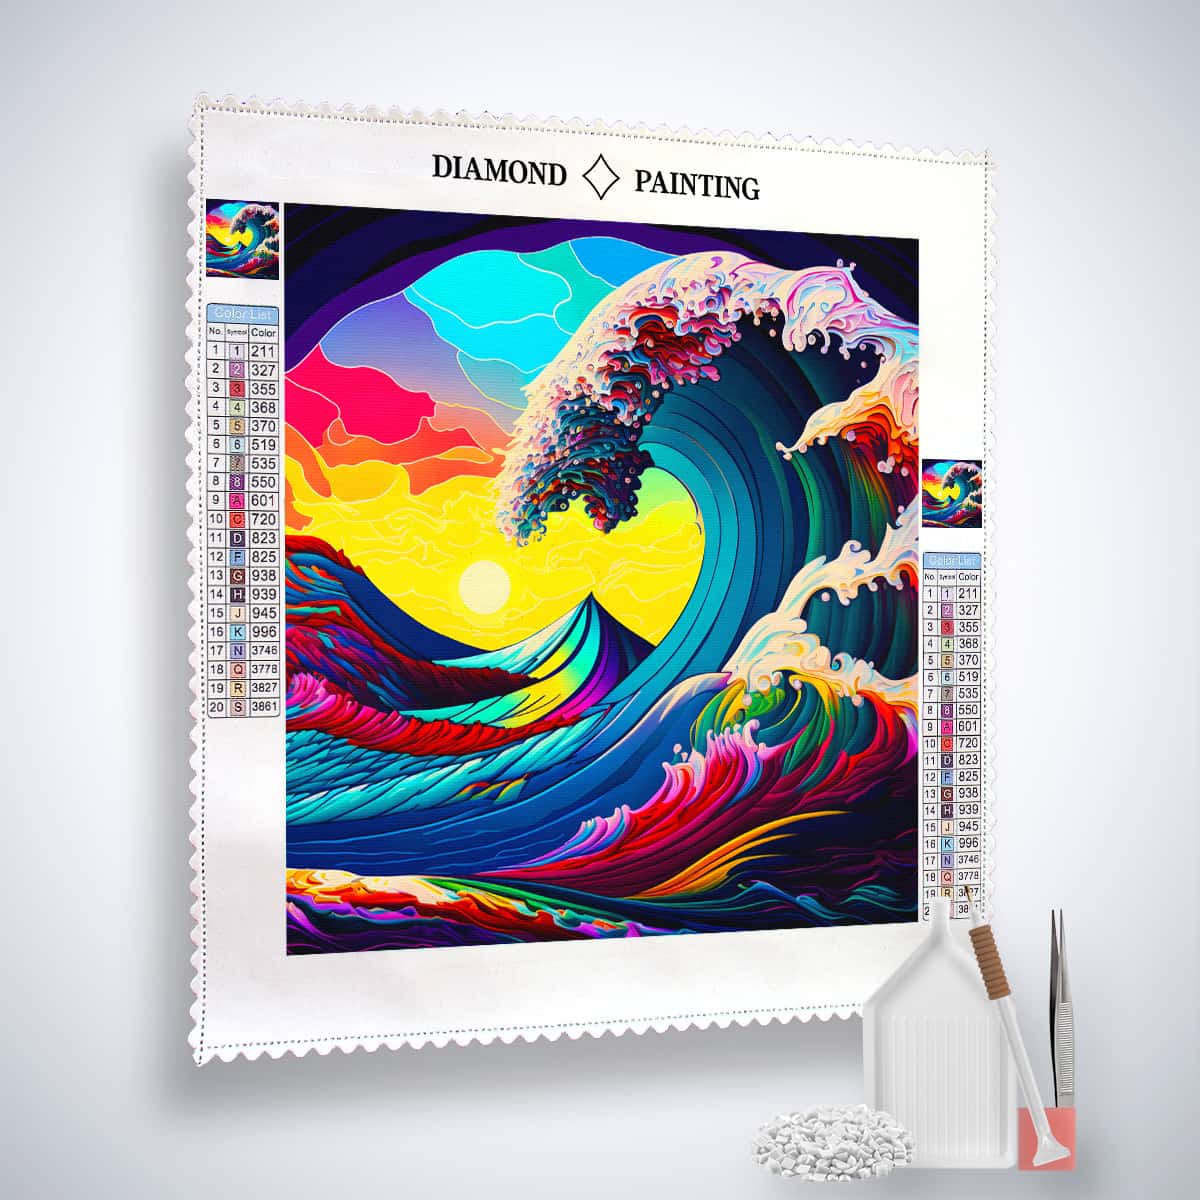 AB Diamond Painting - Regenbogenwelle - gedruckt in Ultra-HD - AB Diamond, Abstrakt, Meer, Neu eingetroffen, Quadratisch, SChiff